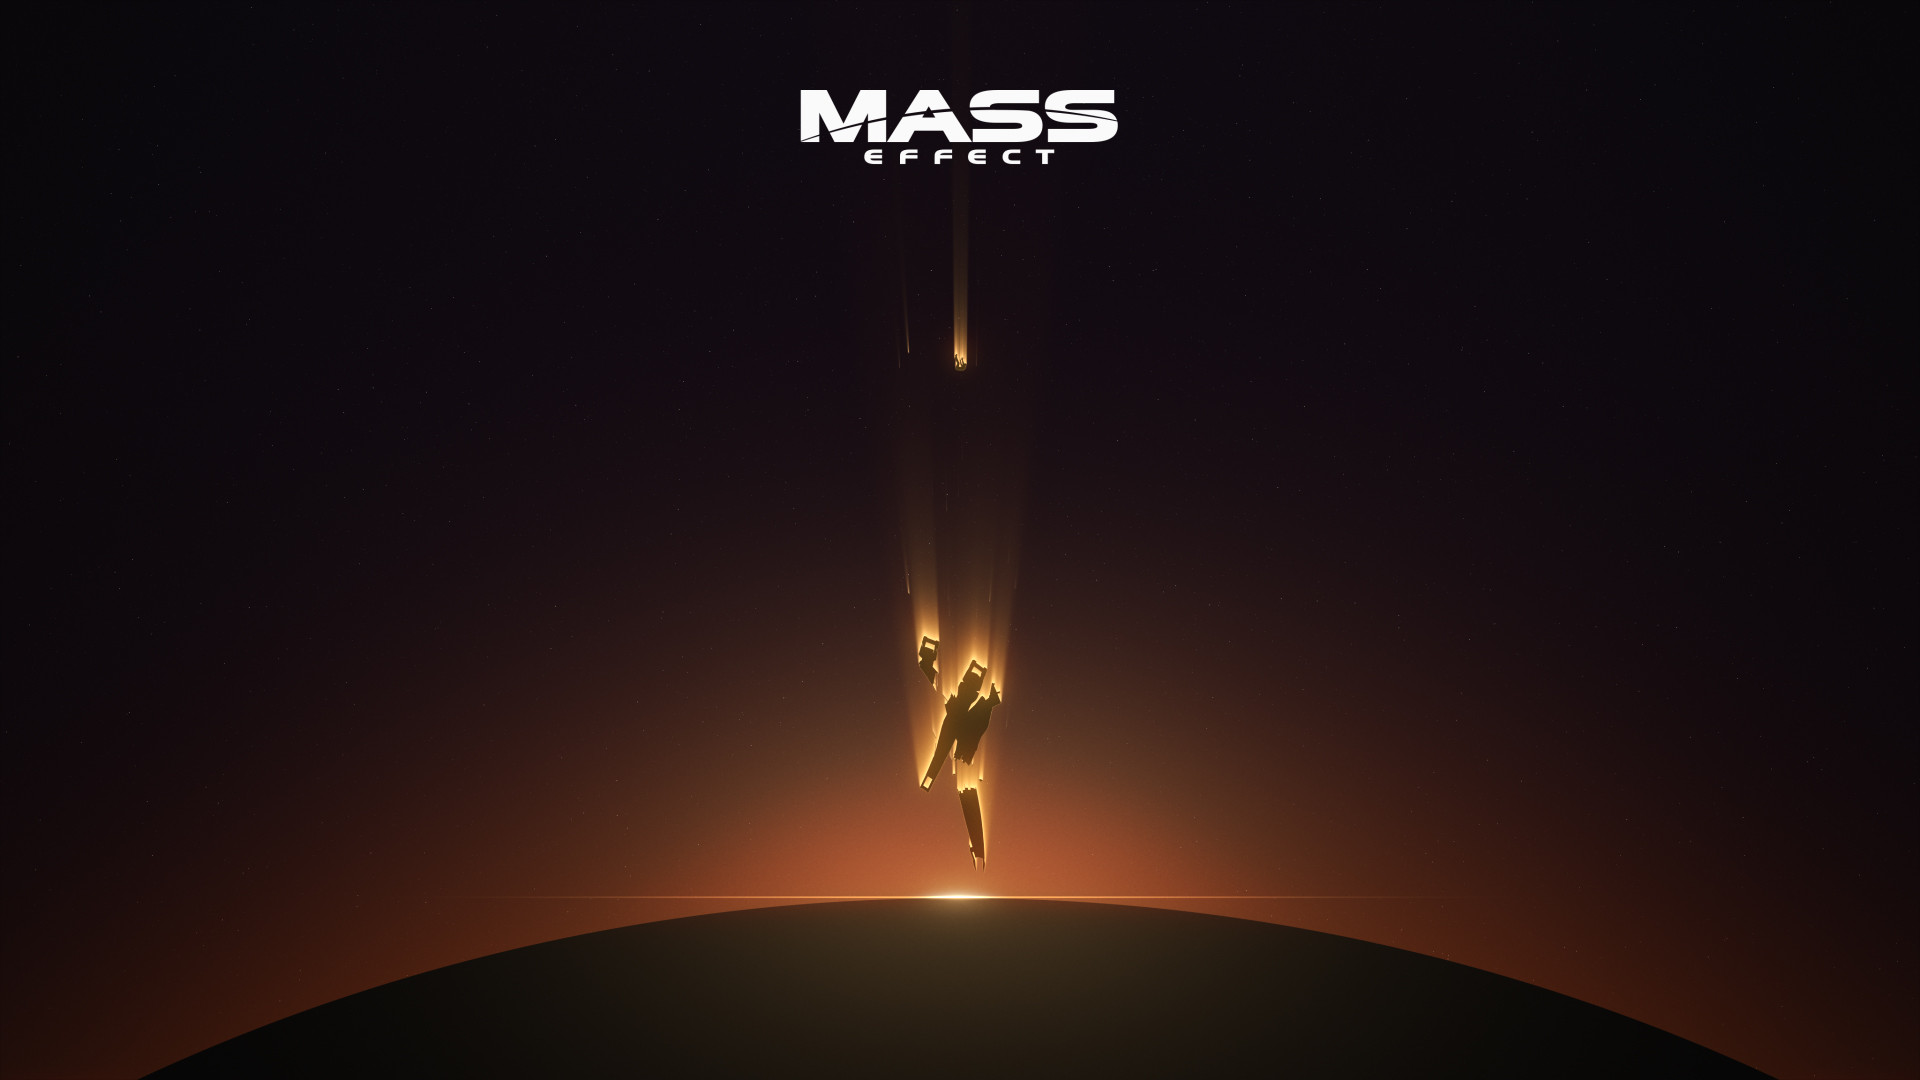 Mass Effect Computer Game Video Games Artwork 1920x1080